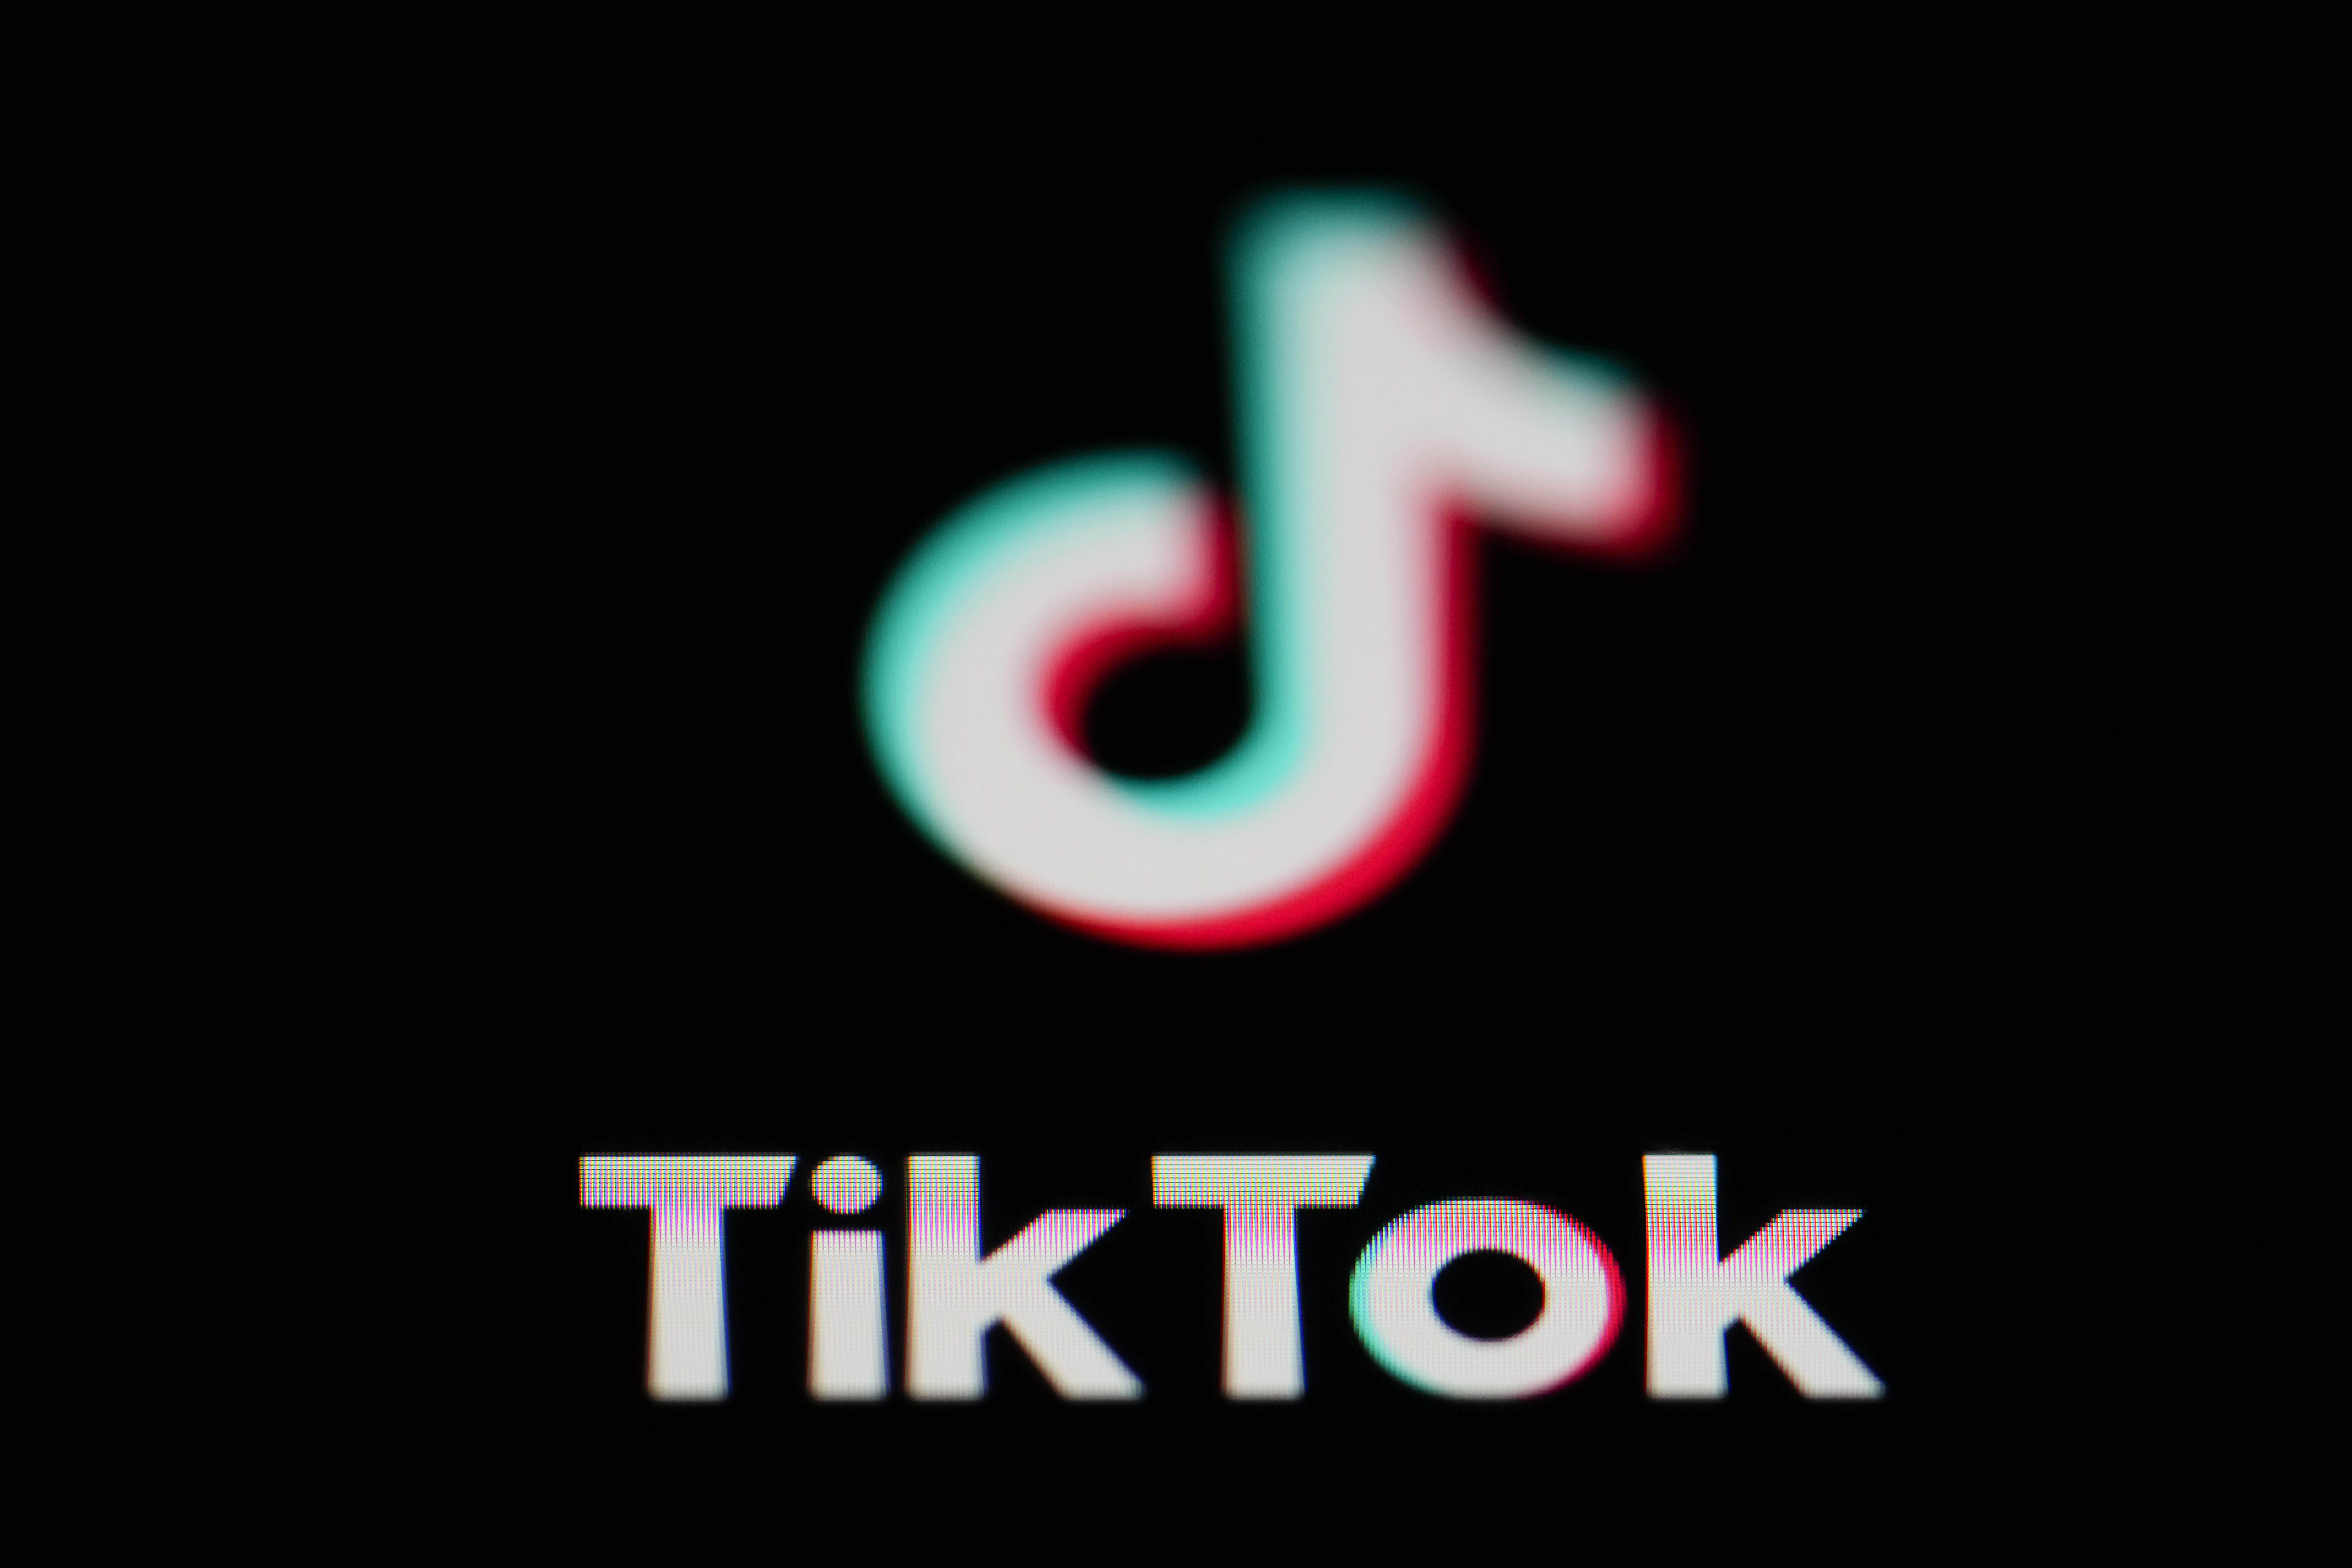 Νέα Ζηλανδία: Απαγόρευση της πλατφόρμας TikTok στα μέλη του Κοινοβουλίου από την 31η Μαρτίου